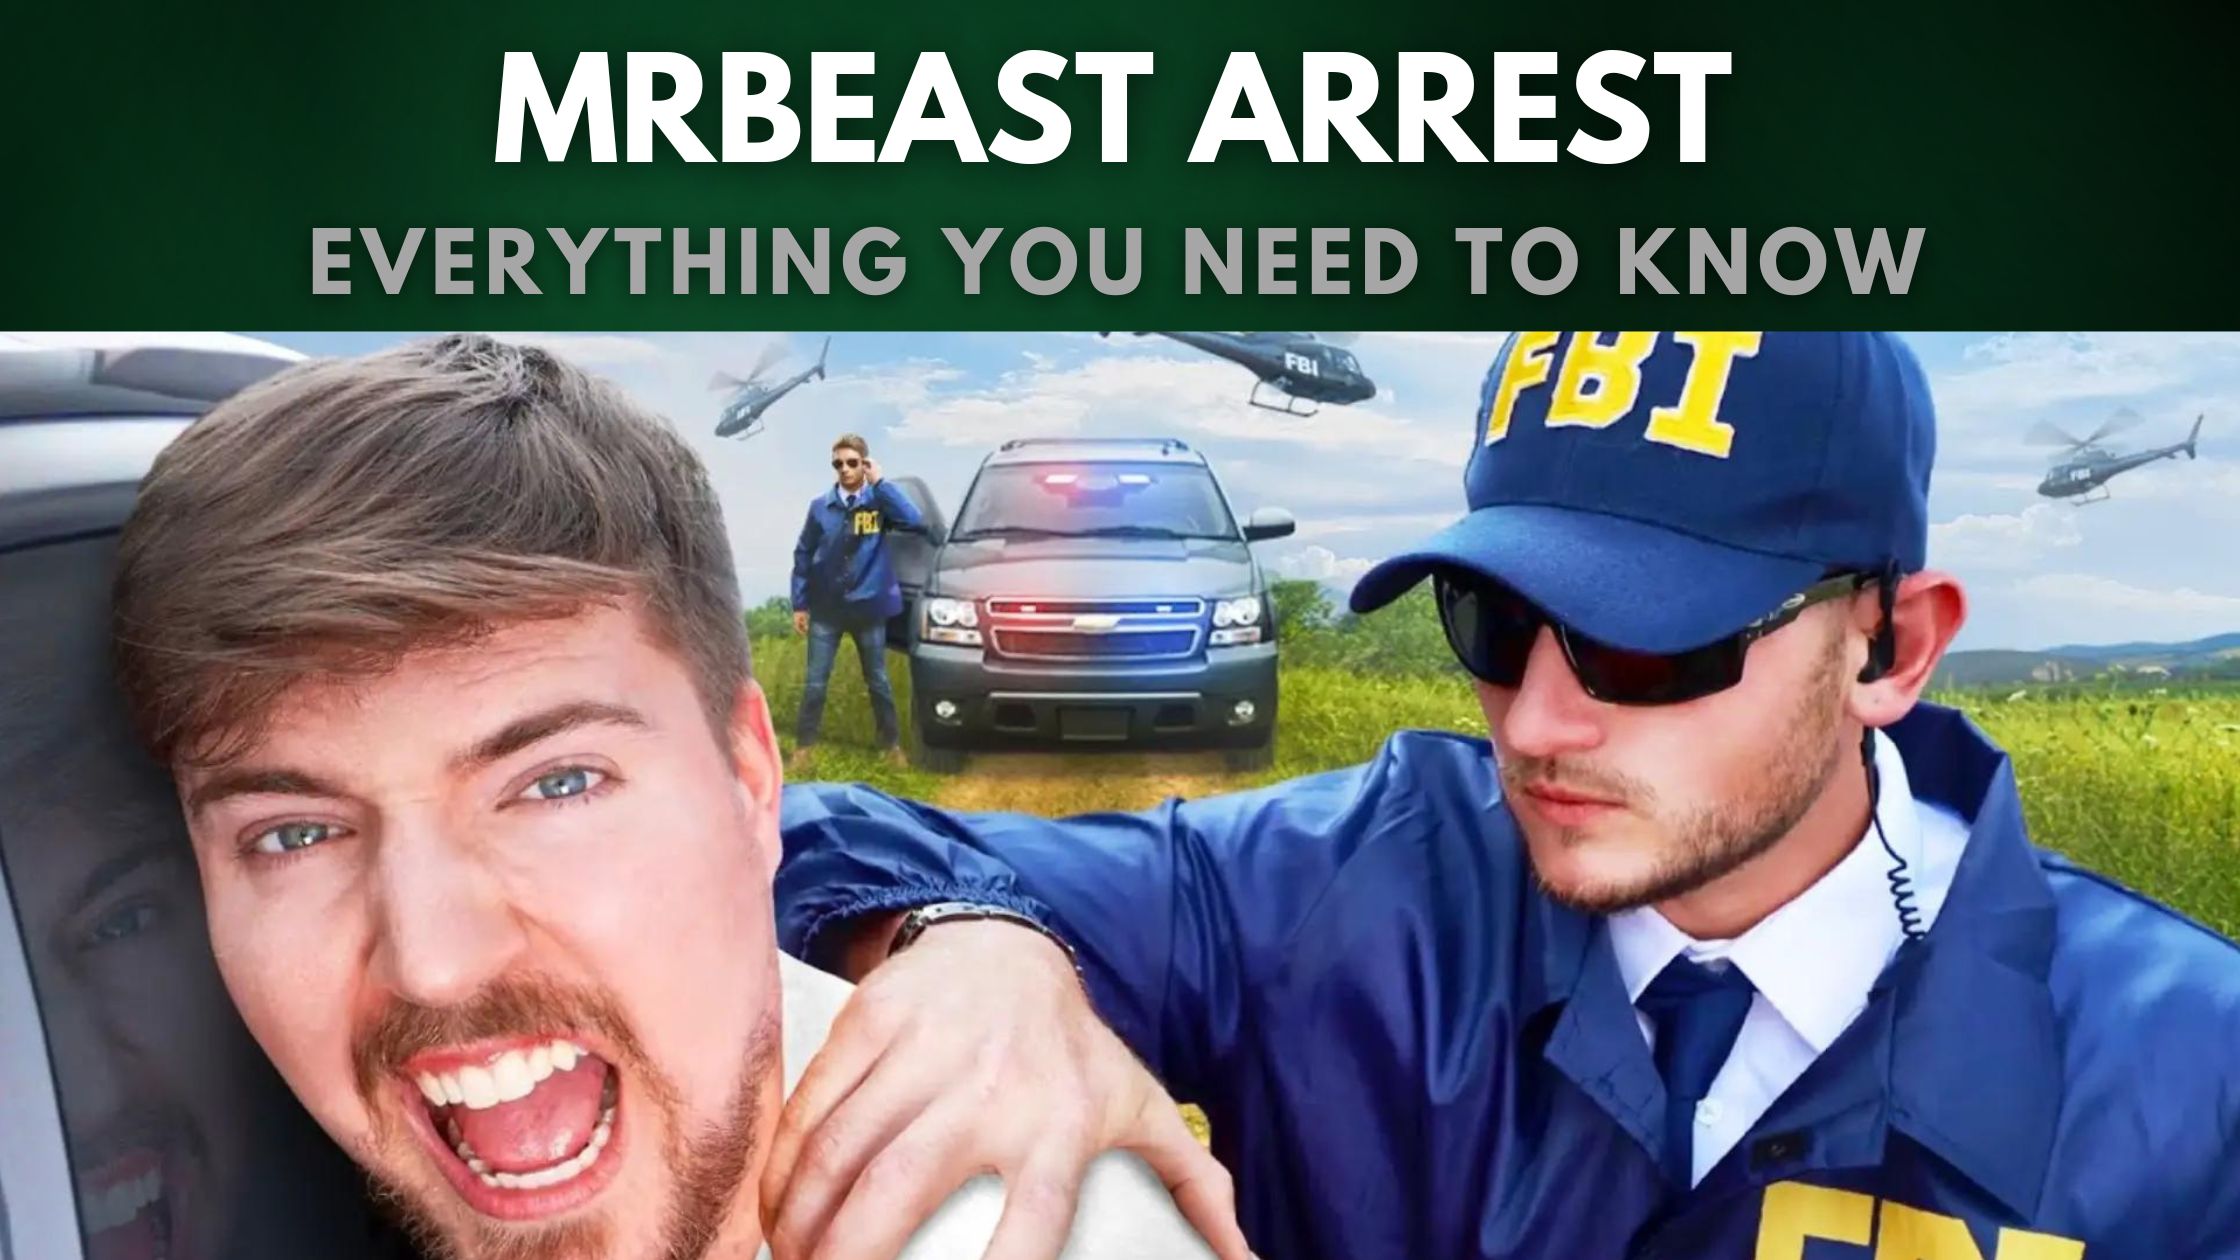 MrBeast arrest